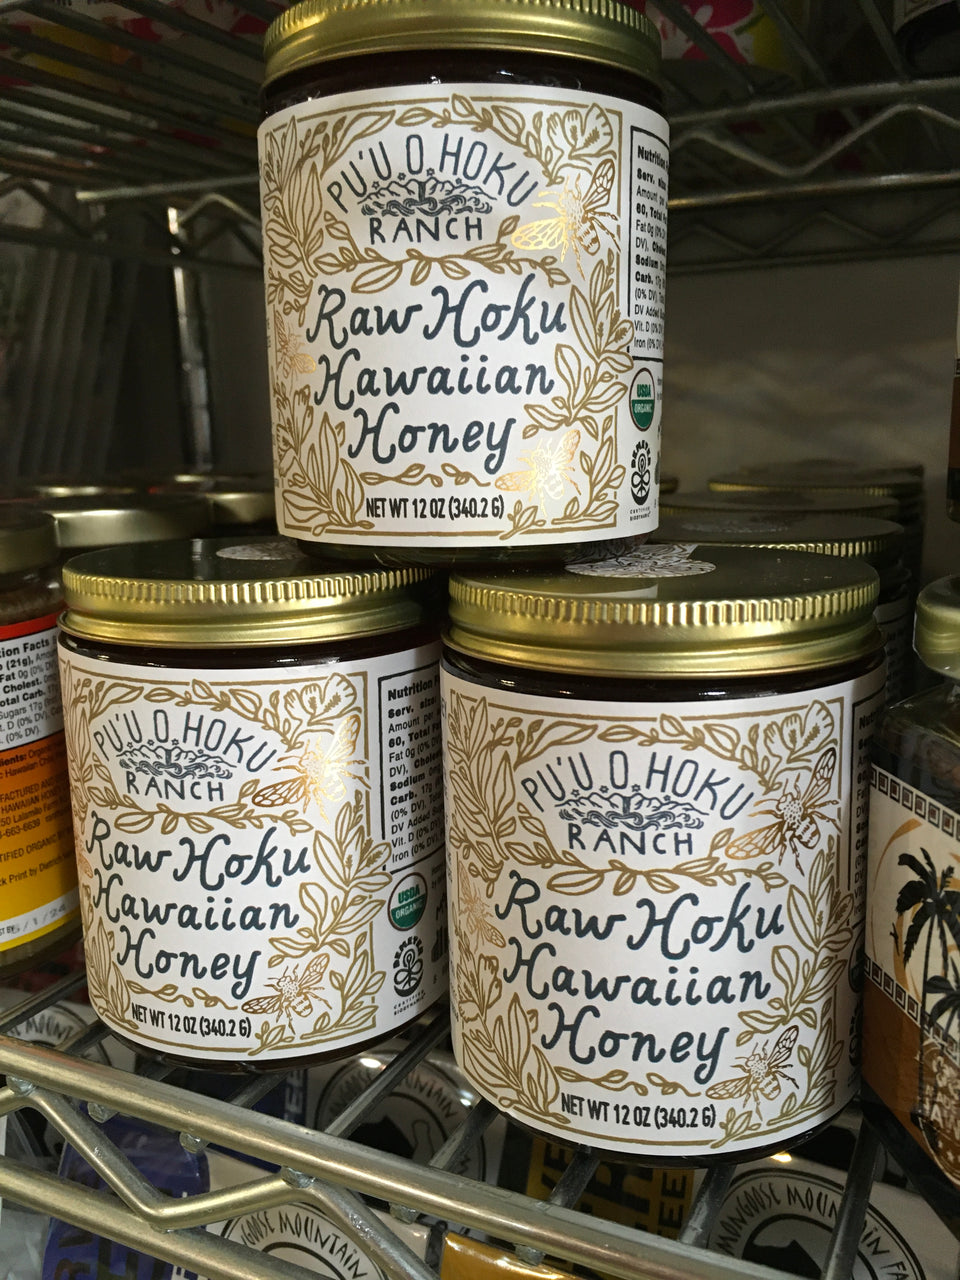 Pu’u O Hoku Ranch Raw Hawaiian Honey